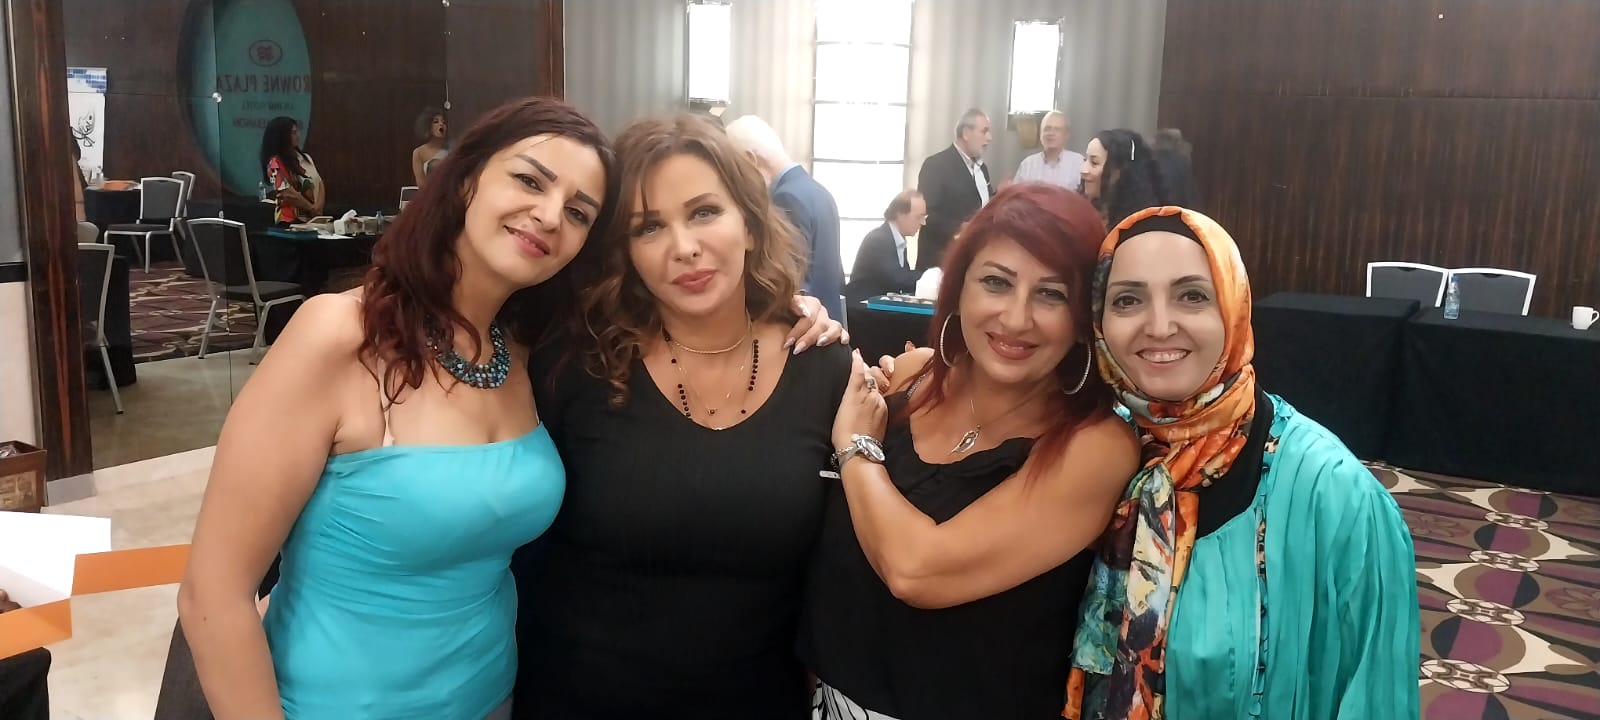 تظاهرة ثقافية مميزة وفريدة هي الاولى من نوعها في لبنان معرض الكاتب العربي، من تنظيم دار ناريمان للنشر